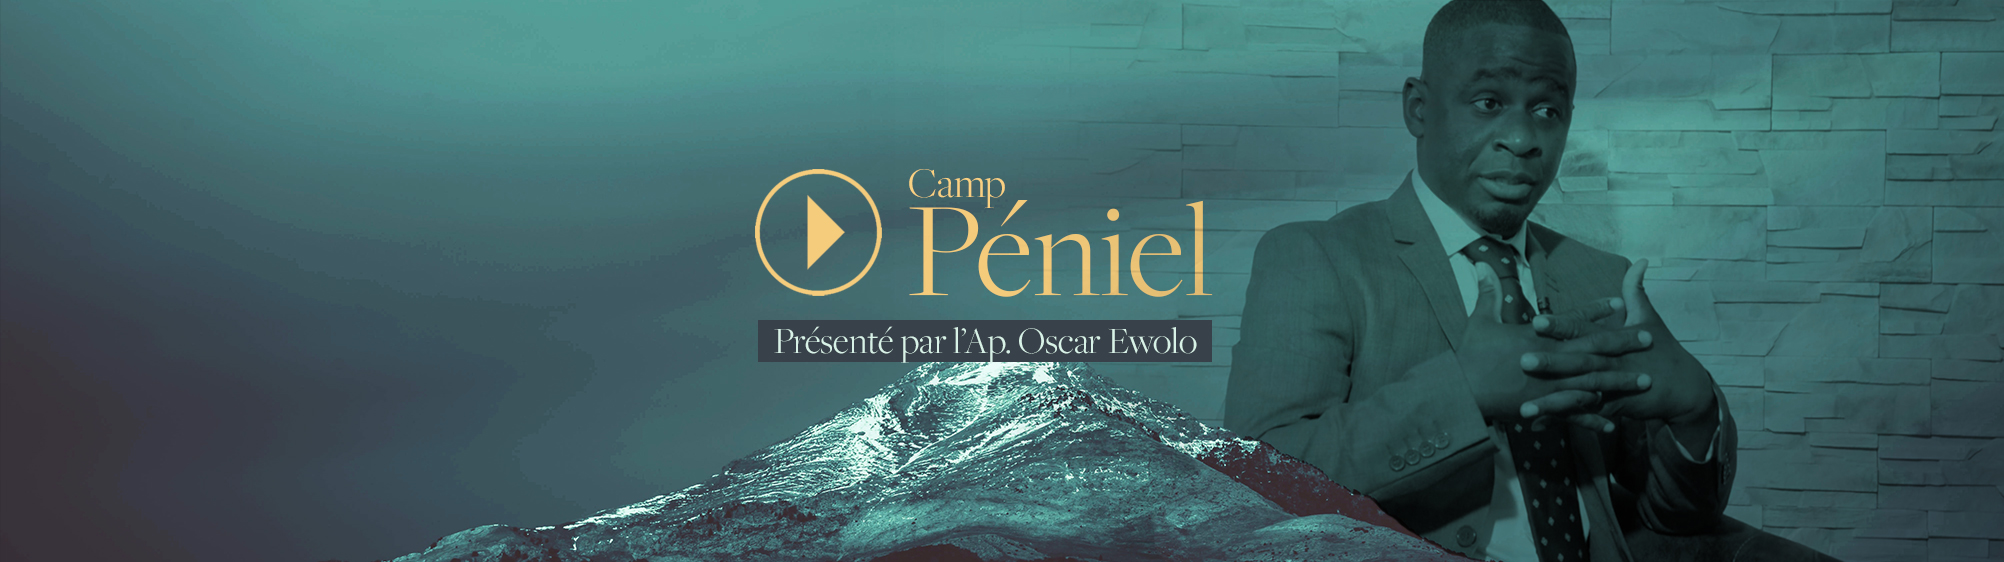 Camp Péniel 2018